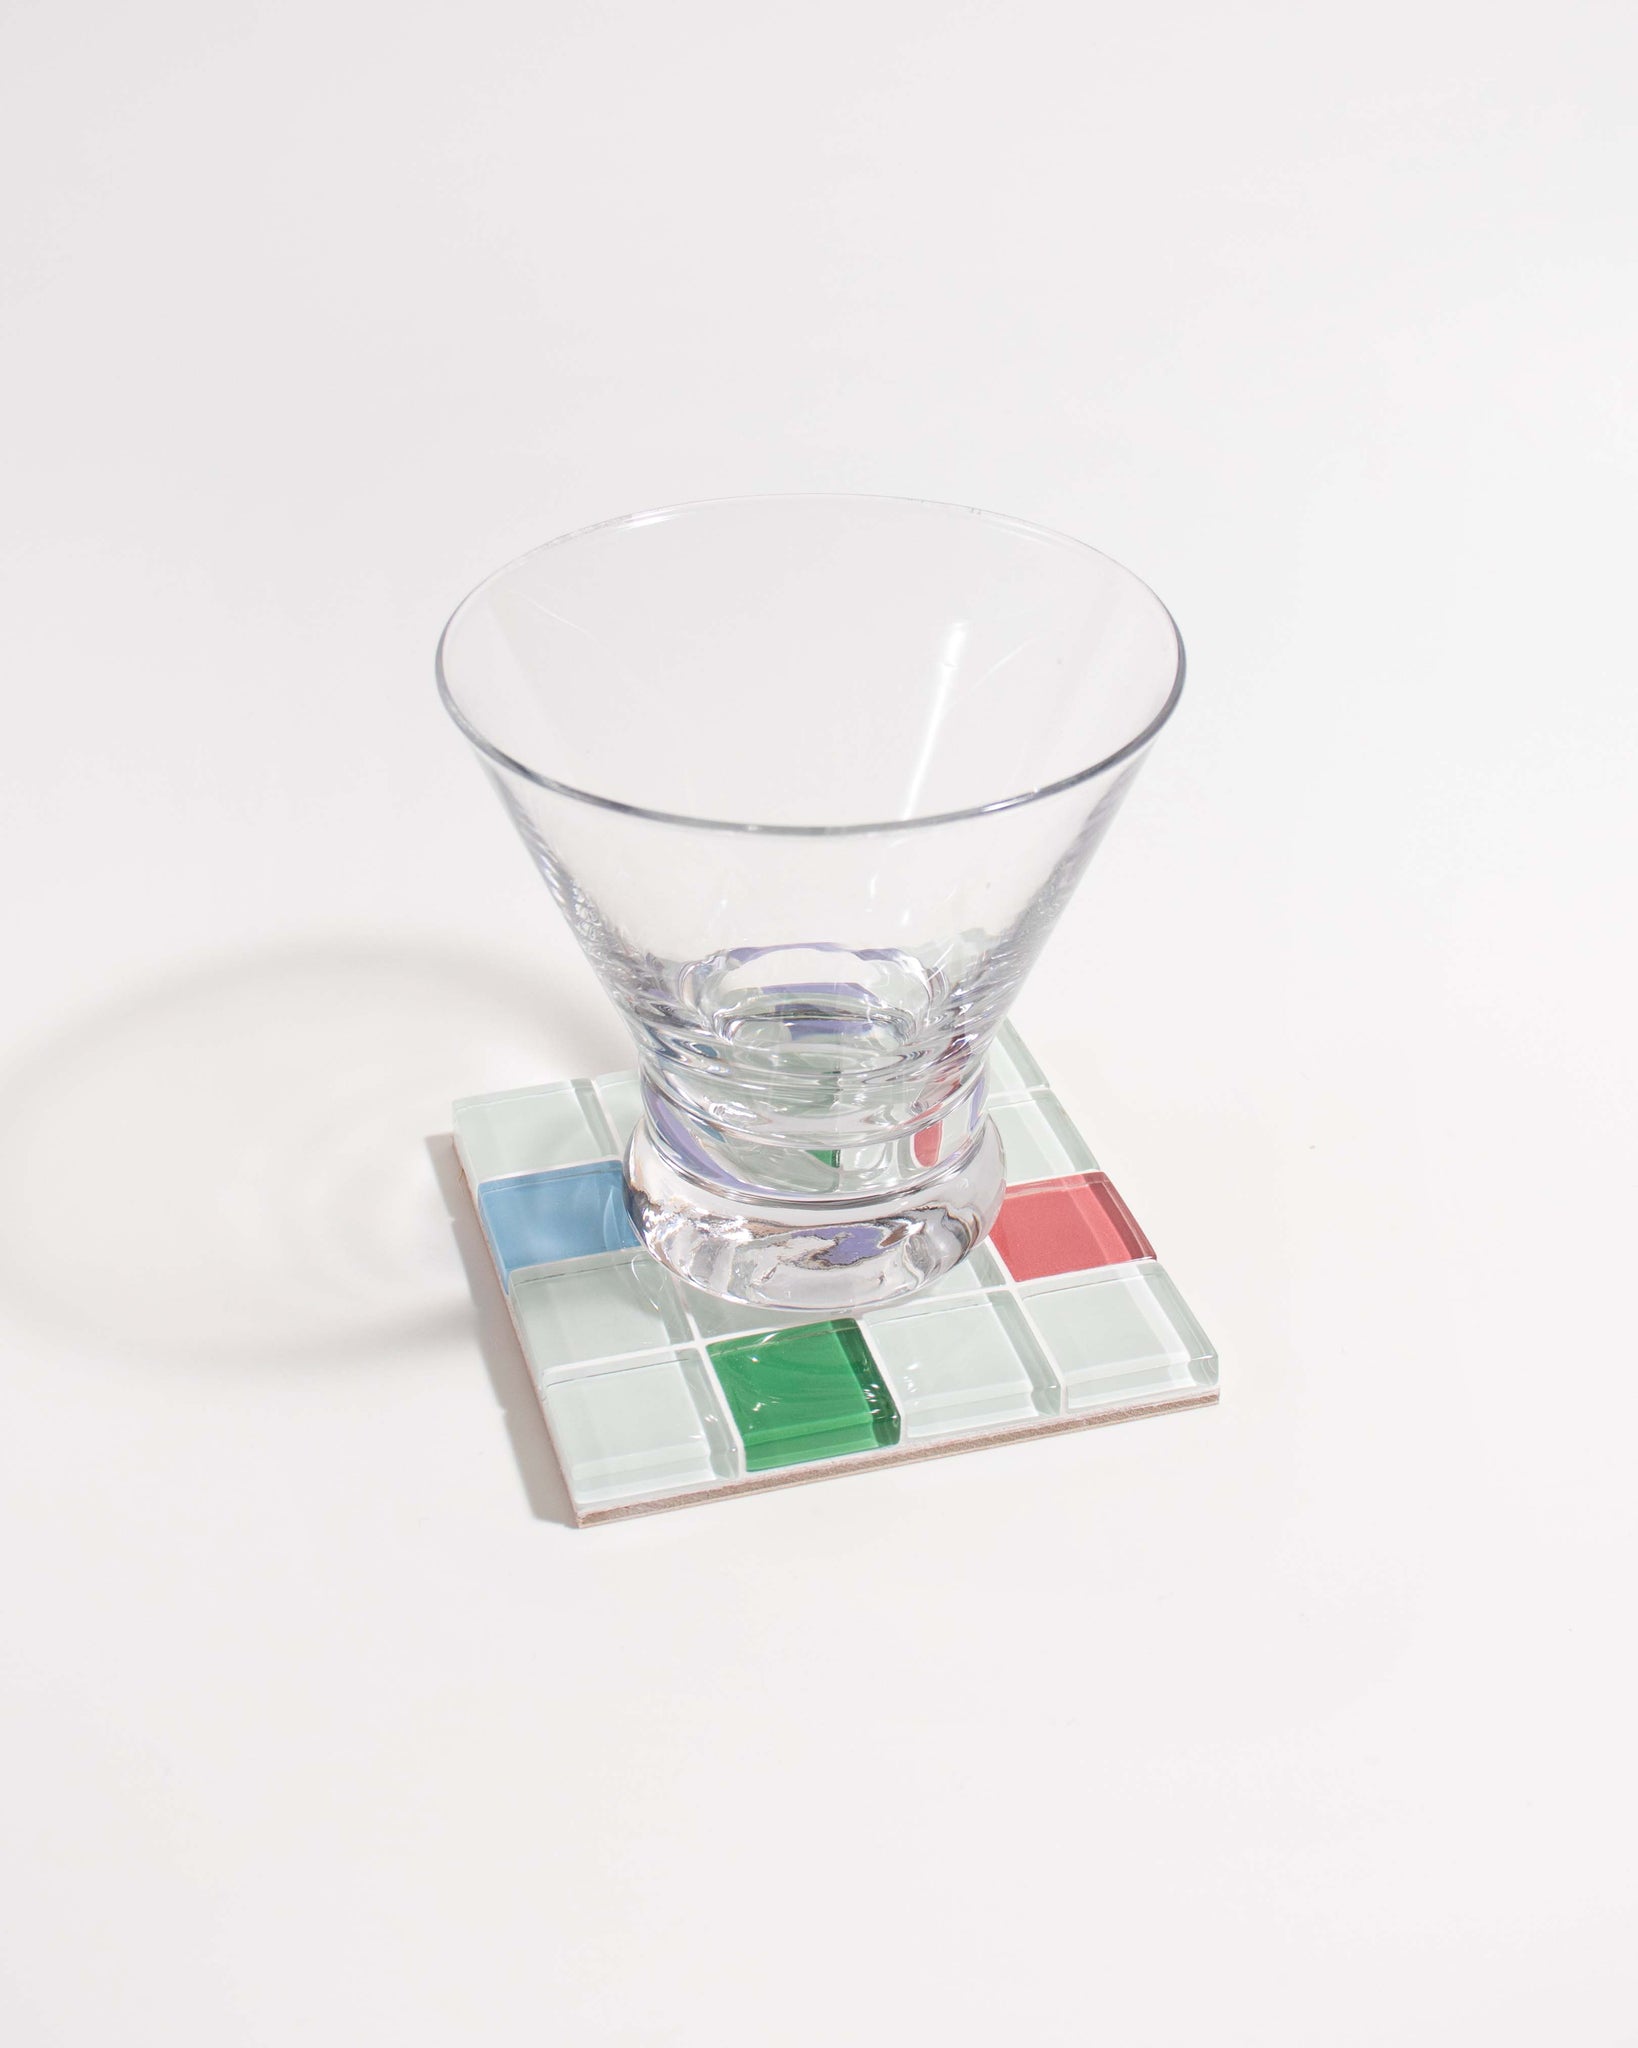 GLASS TILE COASTER - Randomness - Option 4